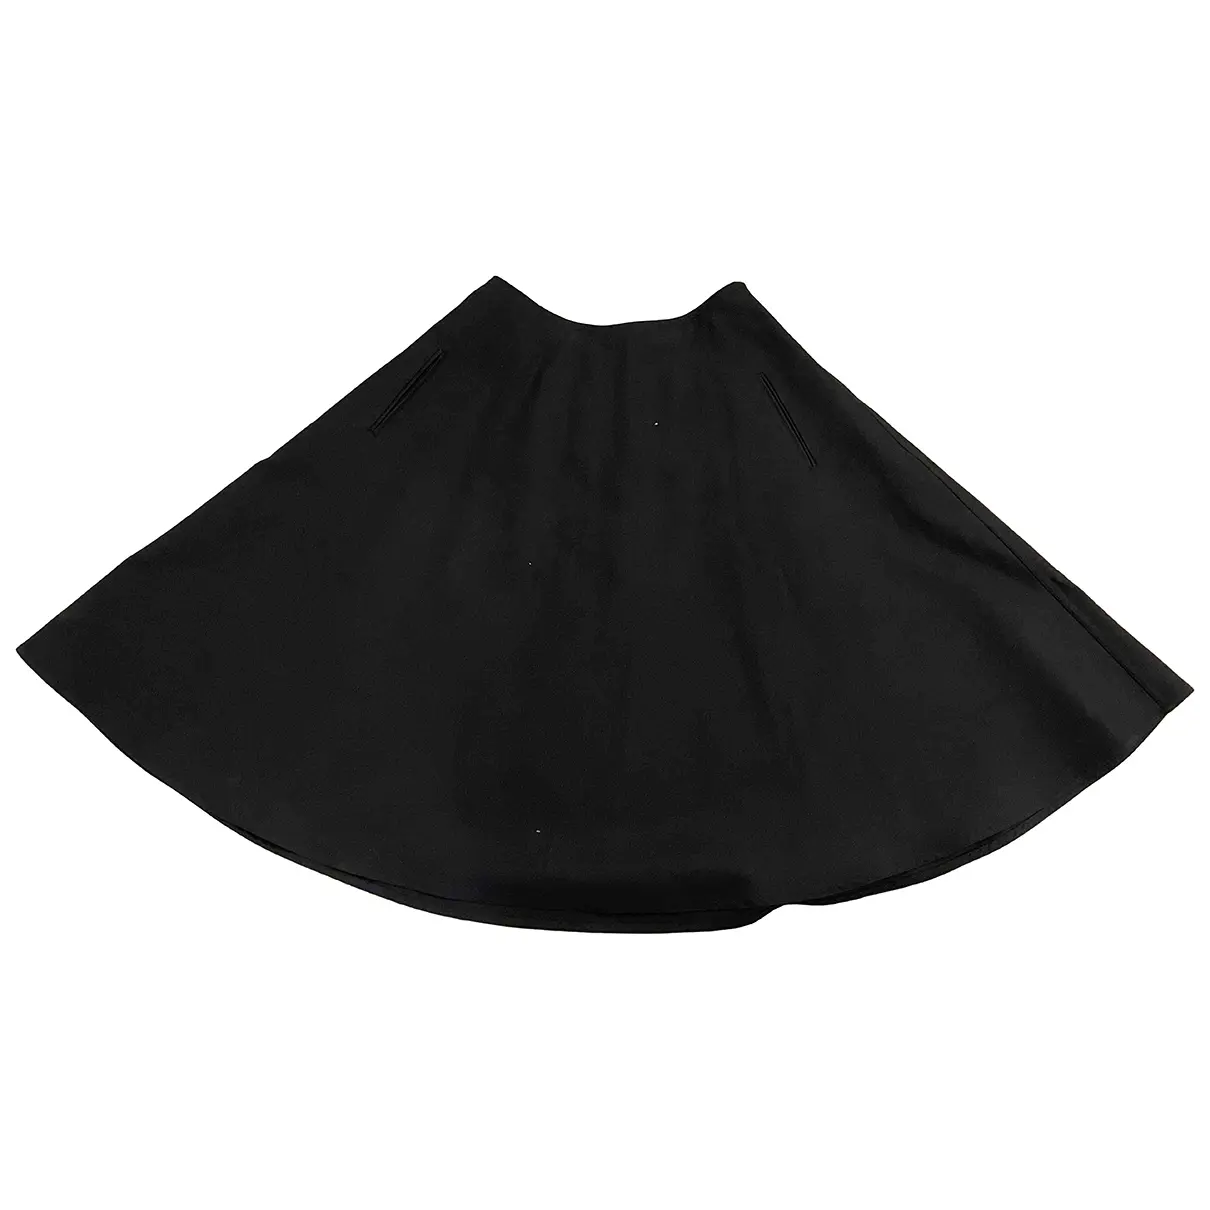 Mid-length skirt Sofie D'Hoore